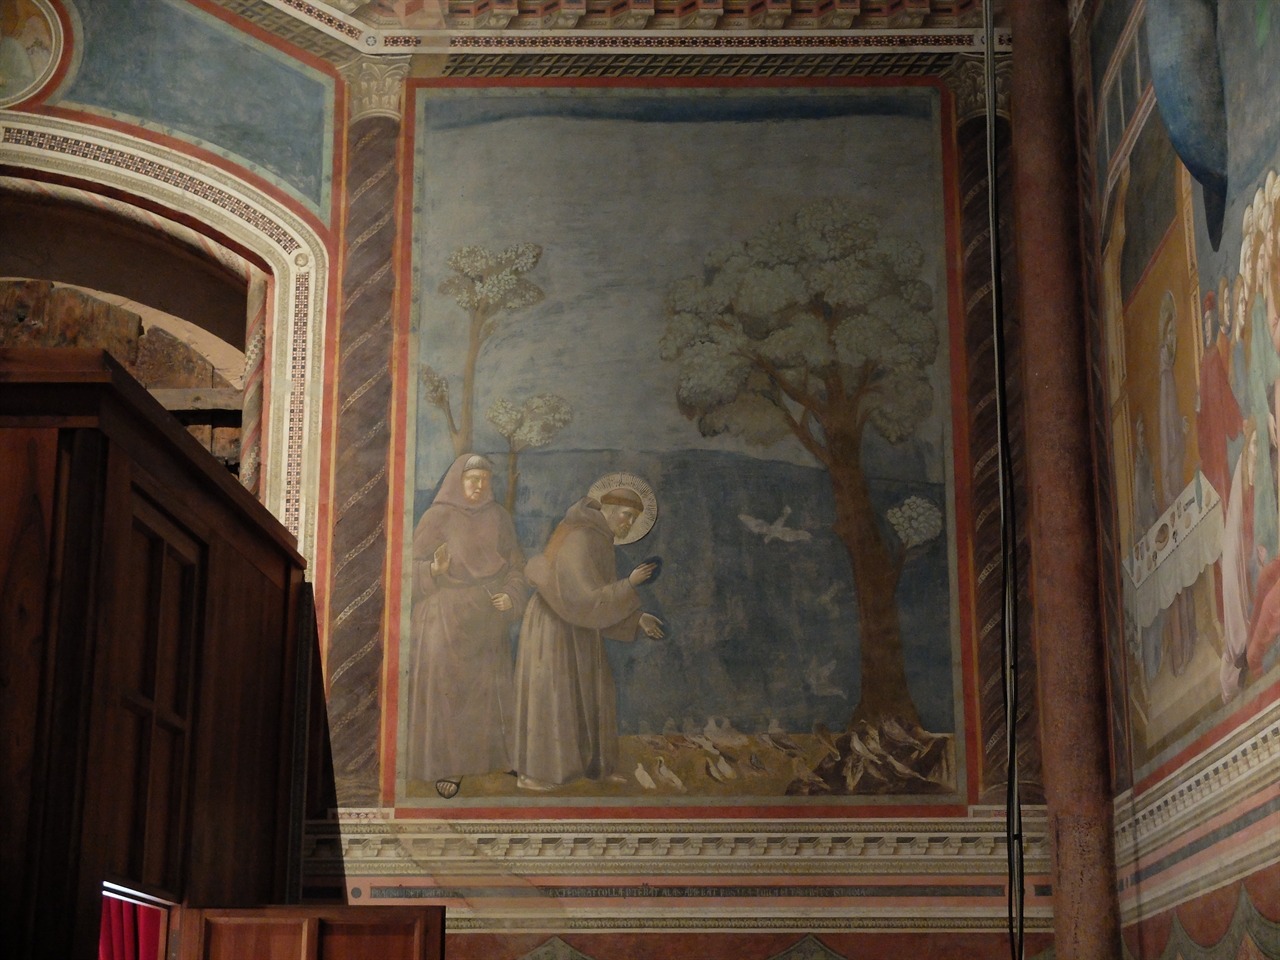 지오토, '새들에게 설교하는 성 프란체스코', 아시시 산 프란체스코 성당. 성 프란체스코의 사랑과 평화의 정신이 가난한 이들과 인류를 넘어서 다른 자연 대상으로 확대되고 있다는 것을 보여주는 중요한 일화입니다.